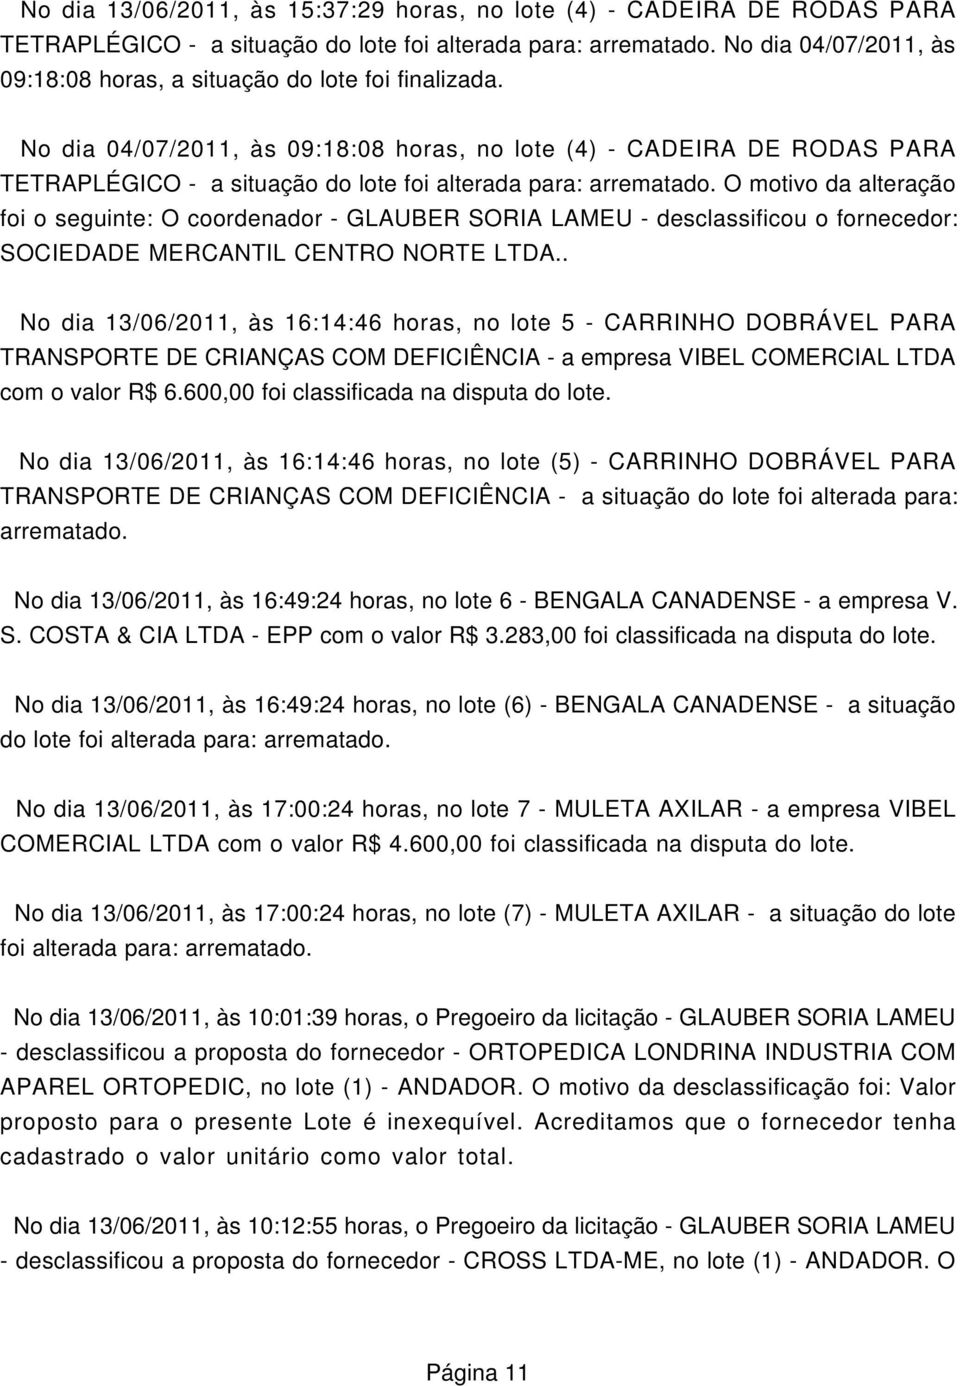 No dia 04/07/2011, às 09:18:08 horas, no lote (4) - CADEIRA DE RODAS PARA TETRAPLÉGICO - a situação do lote foi alterada para: arrematado.